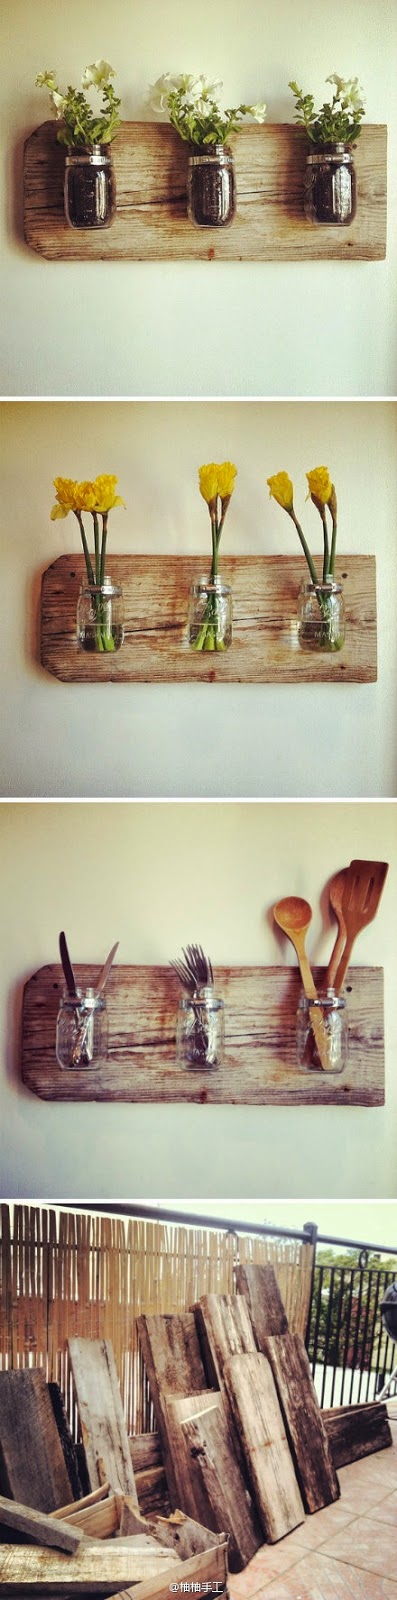 12 ideas bonitas de decoración con madera